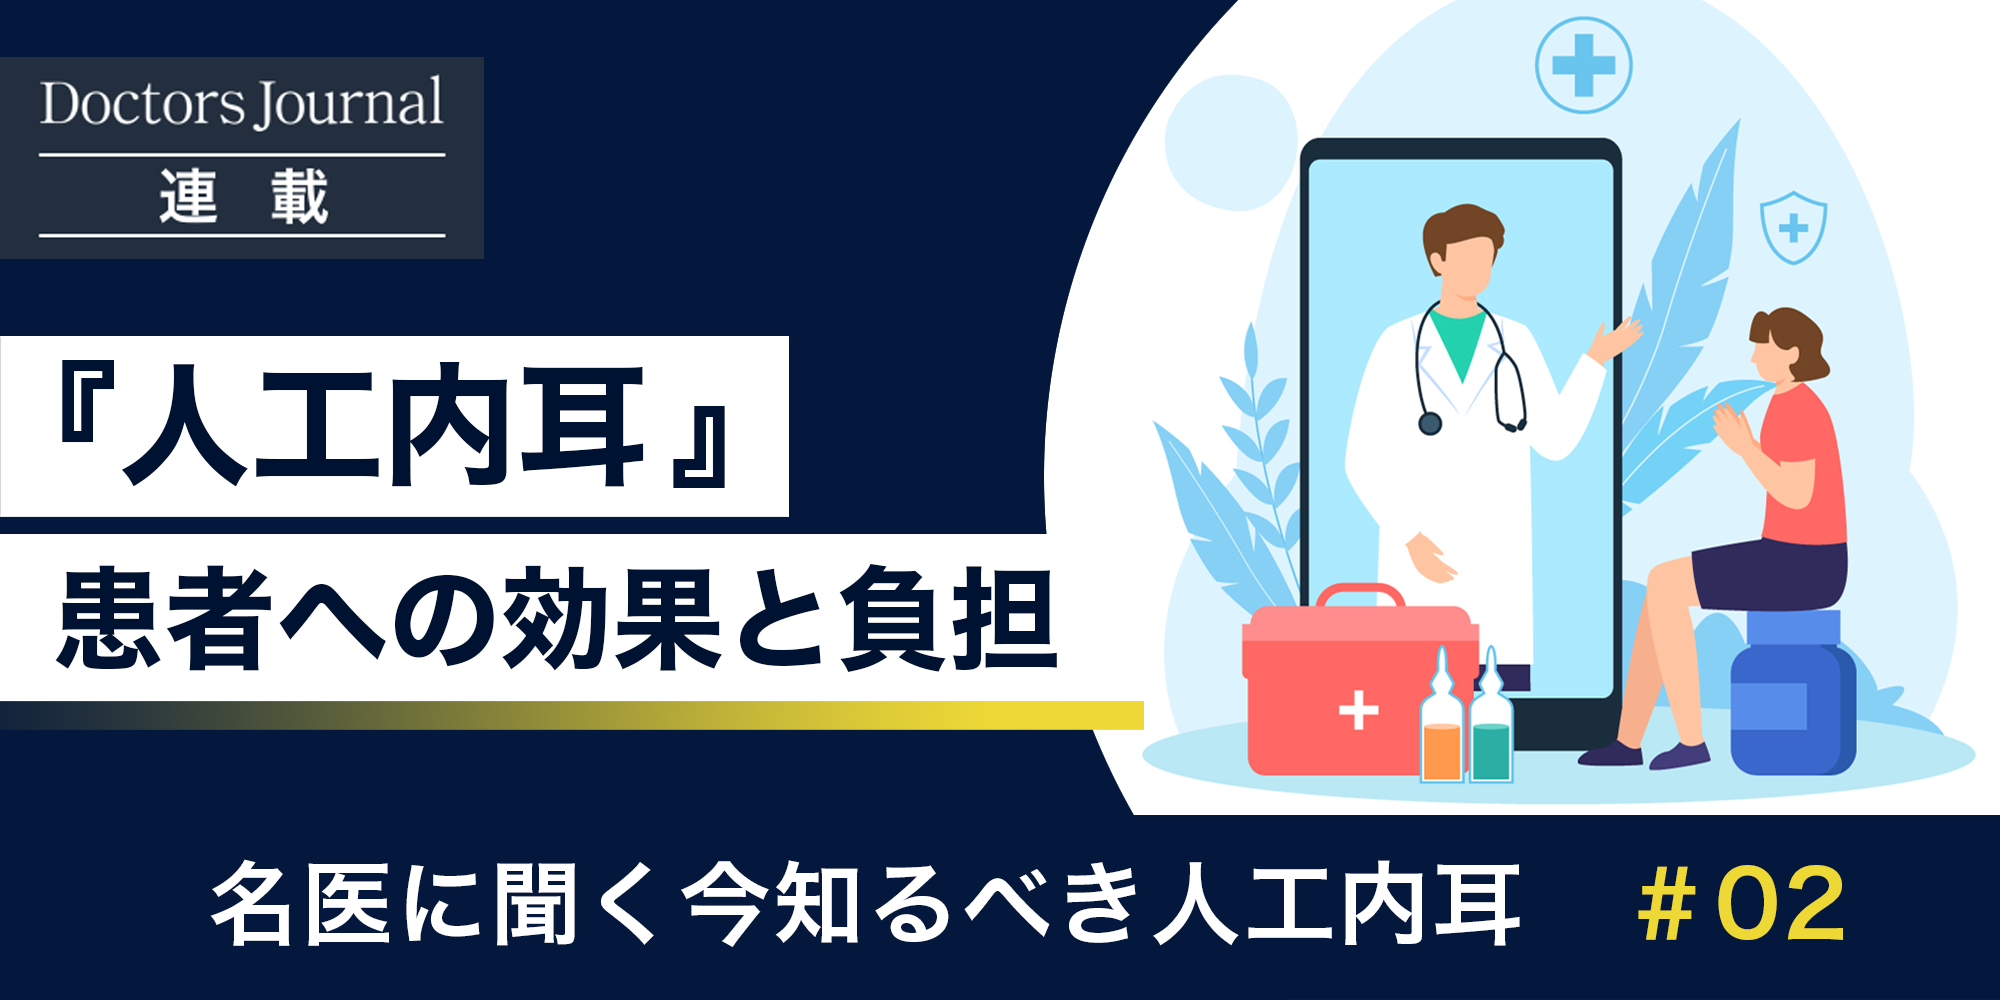 kumakawa doctor 2